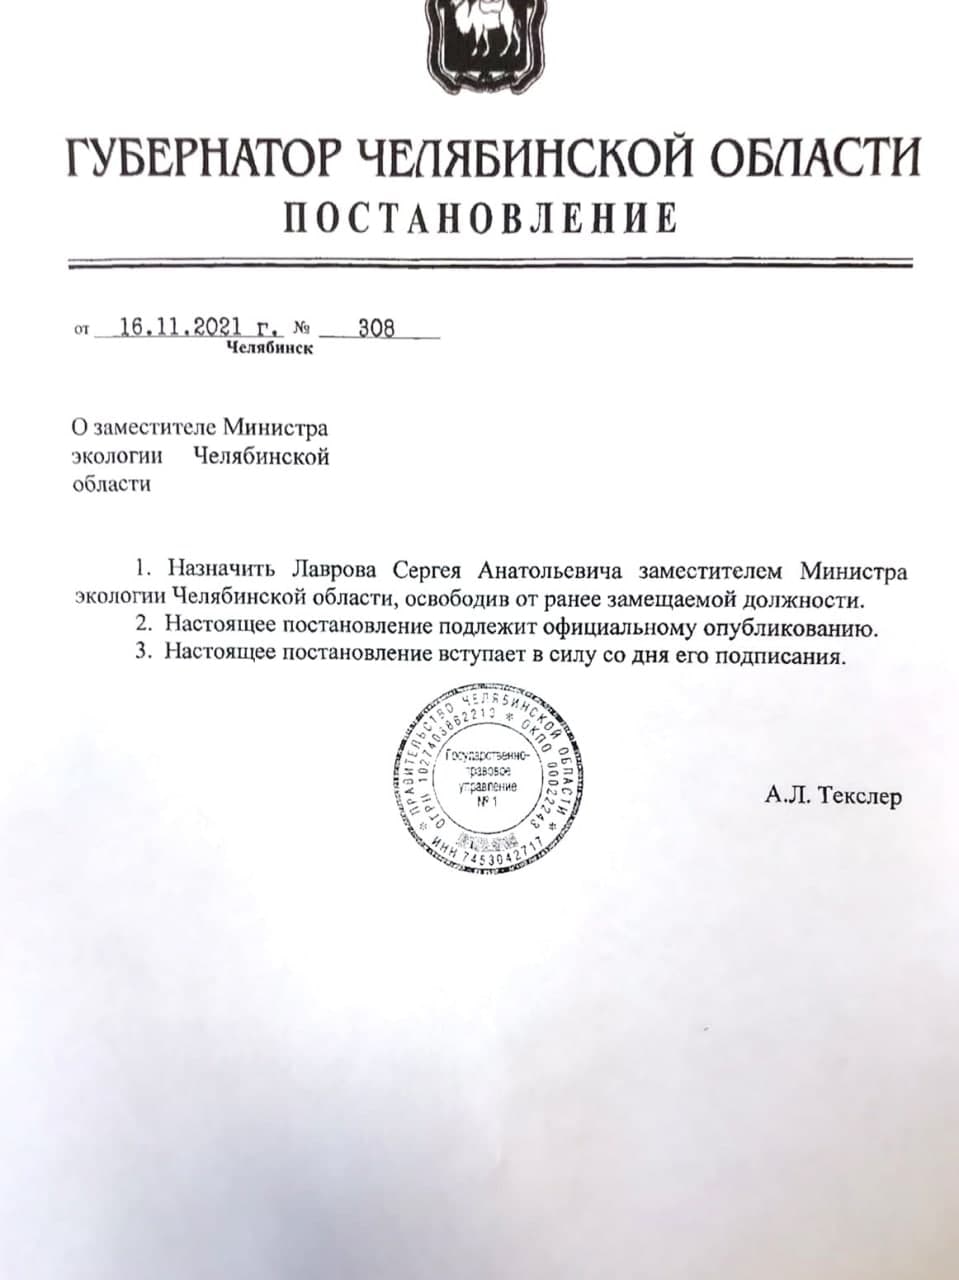 Новое назначение в минэкологии Челябинской области